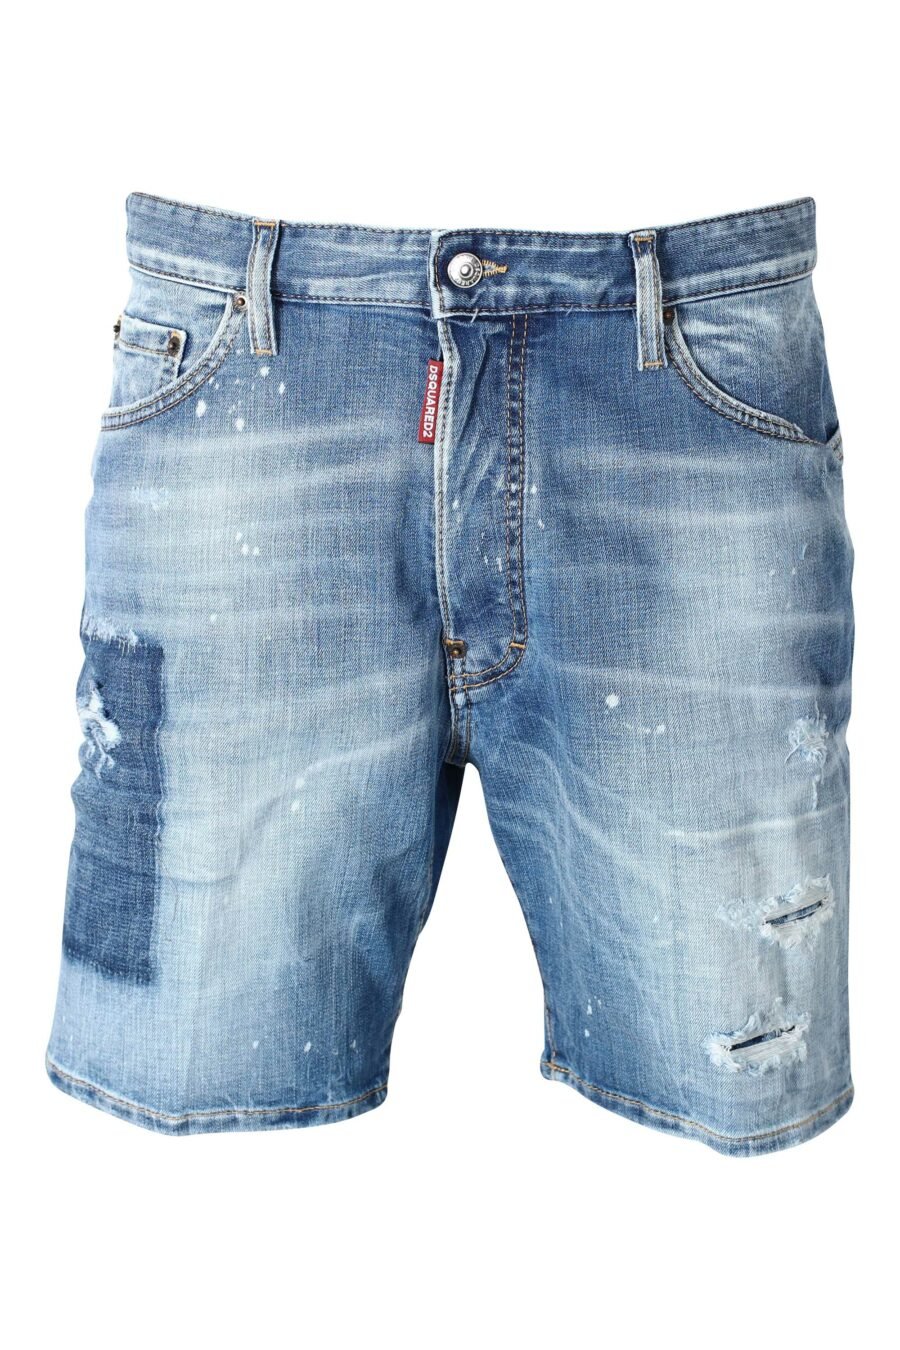 Blaue Denim-Shorts mit Aufnäher und grafischem Aufdruck auf dem Rücken - IMG 9593